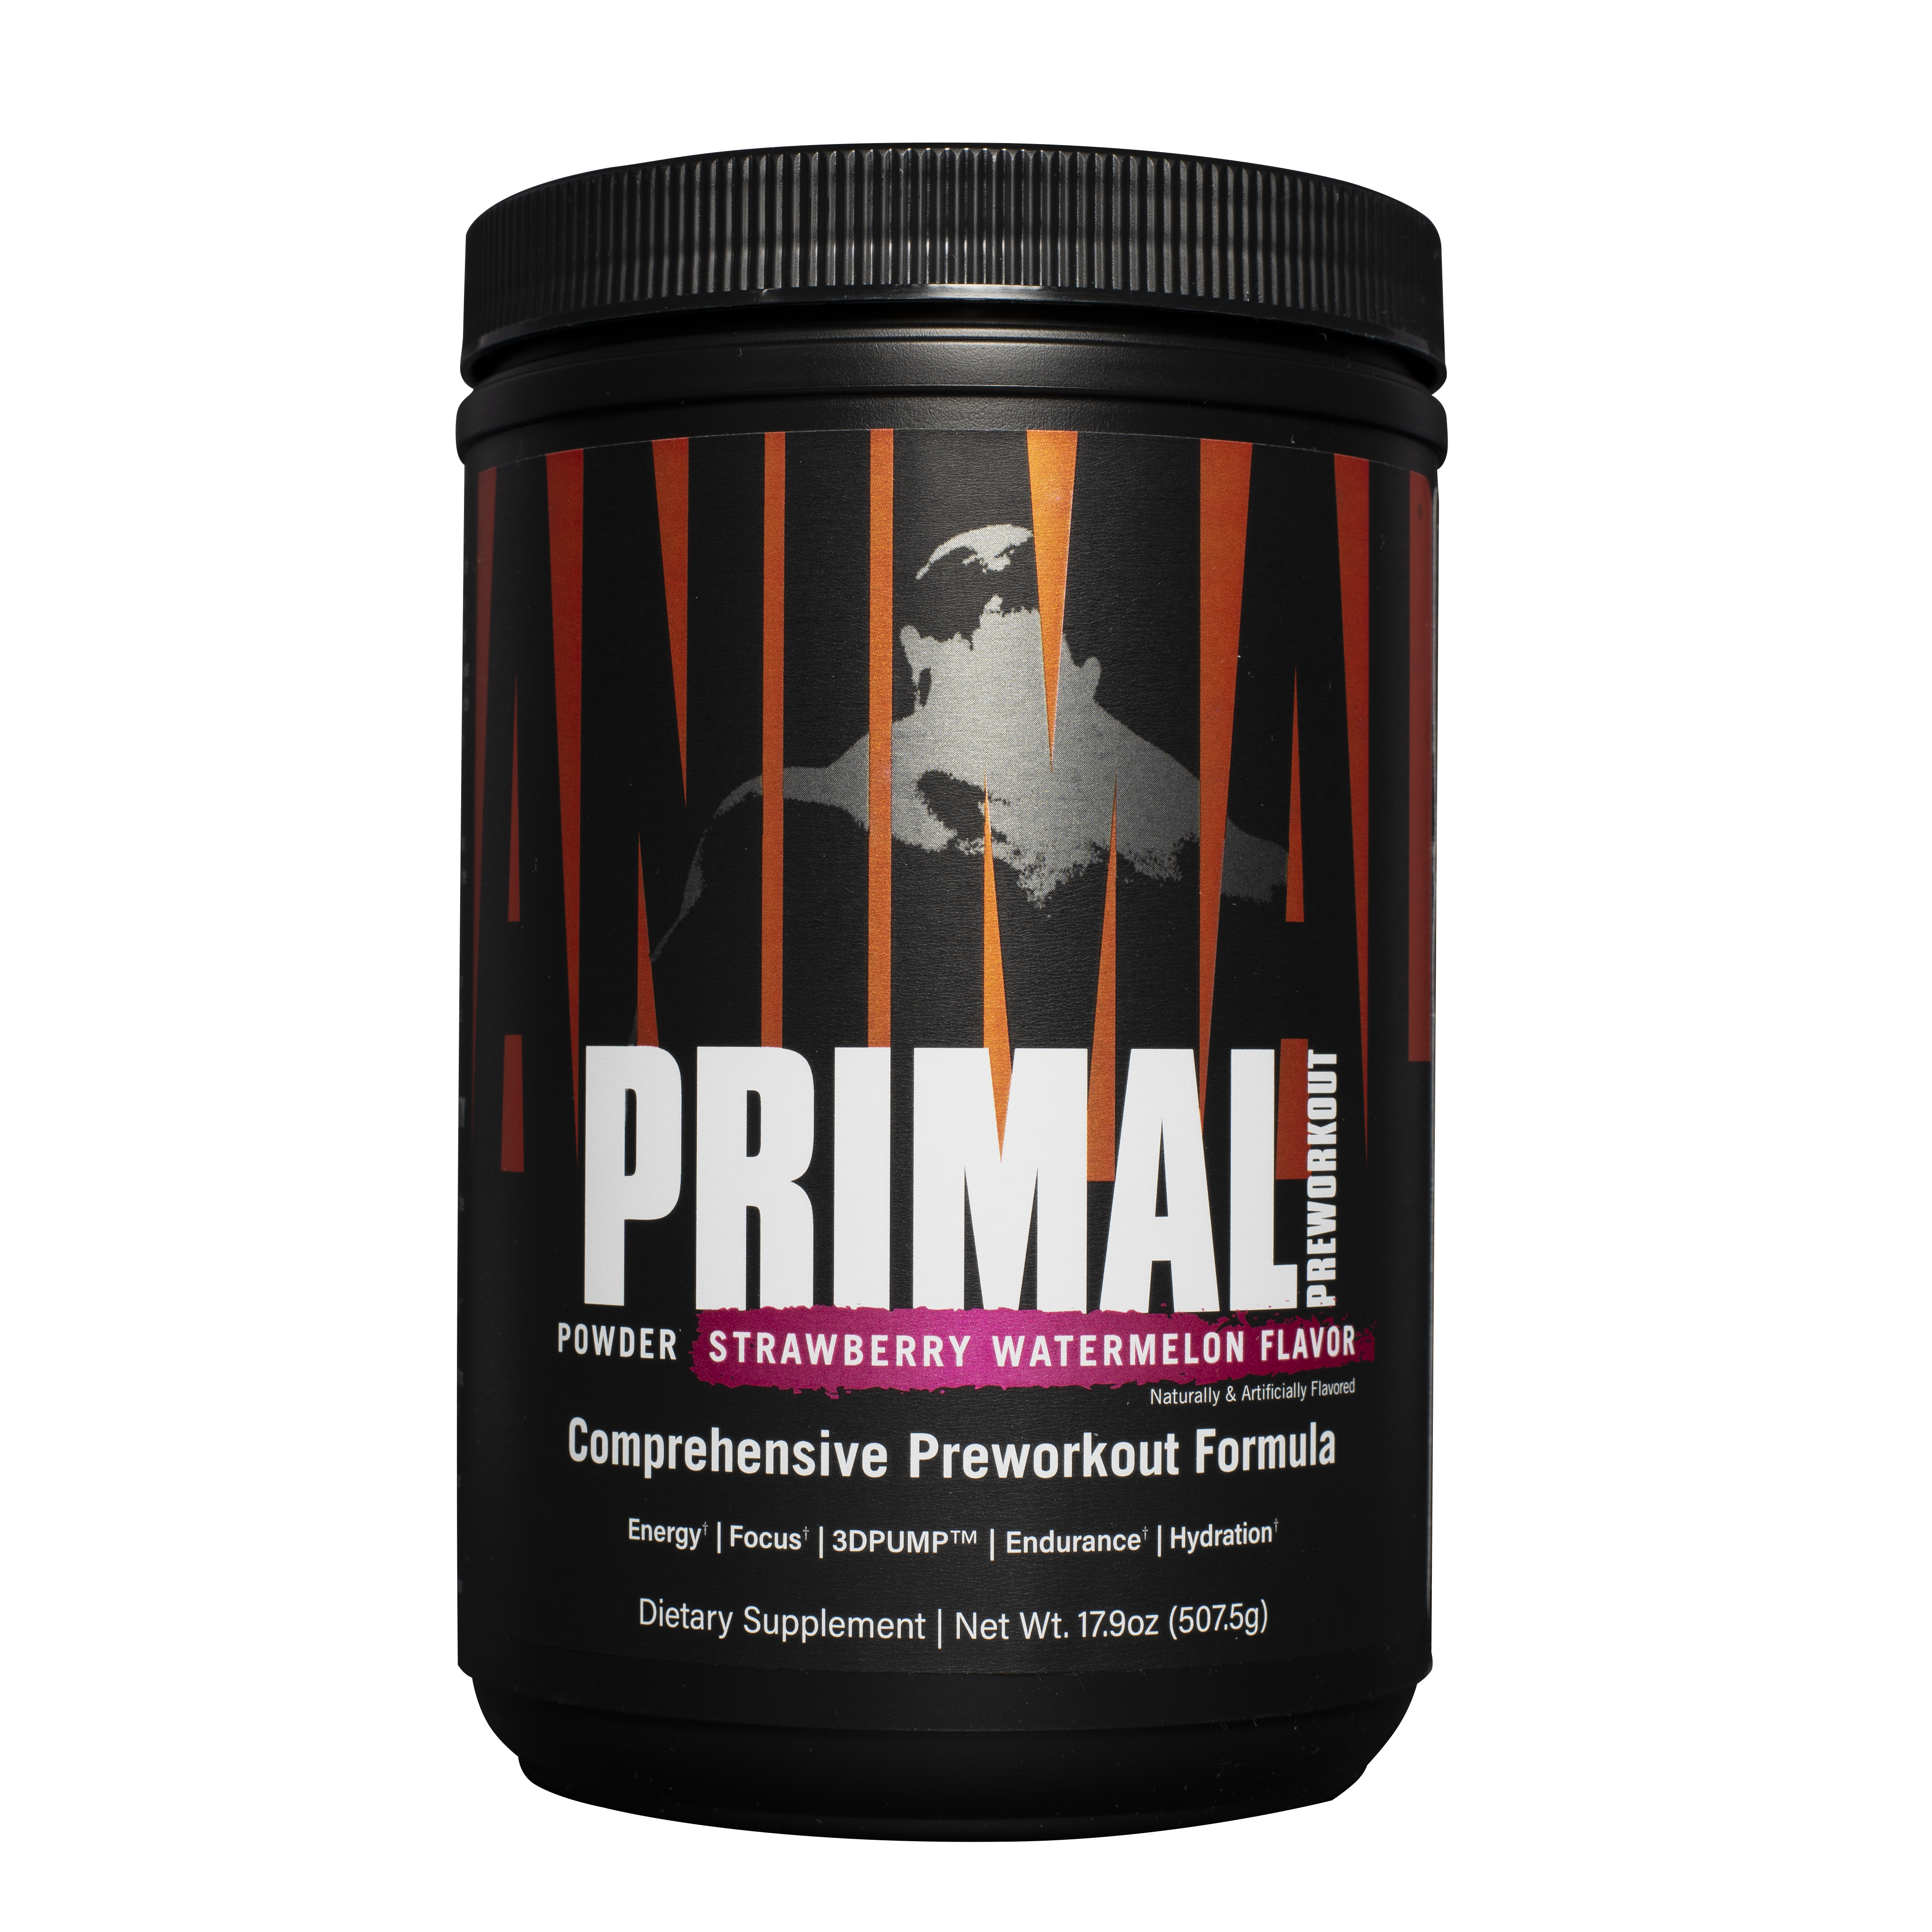 Animal Primal powder